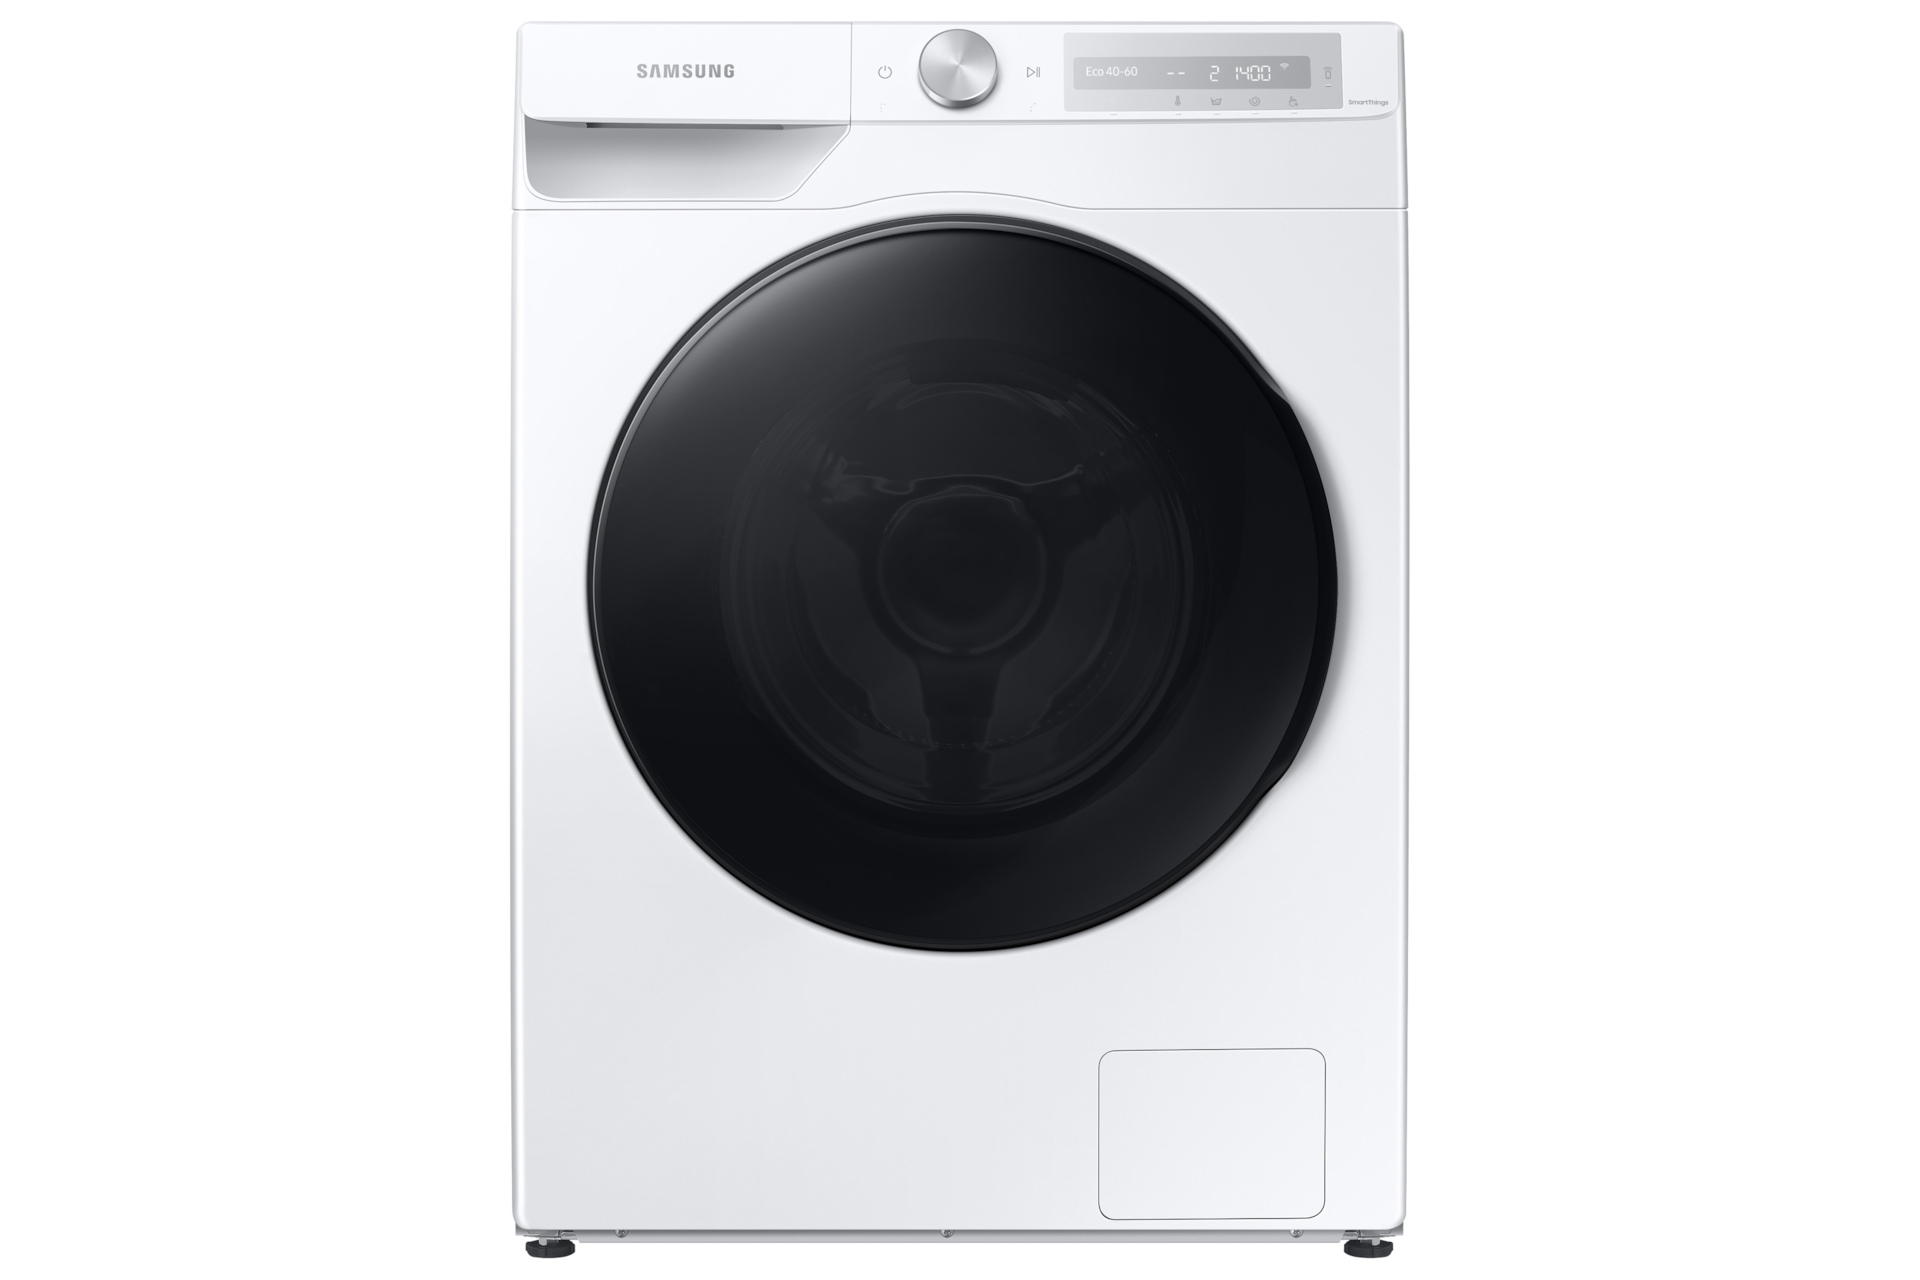 Lave-linge séchant - Machine à laver séchante - Darty